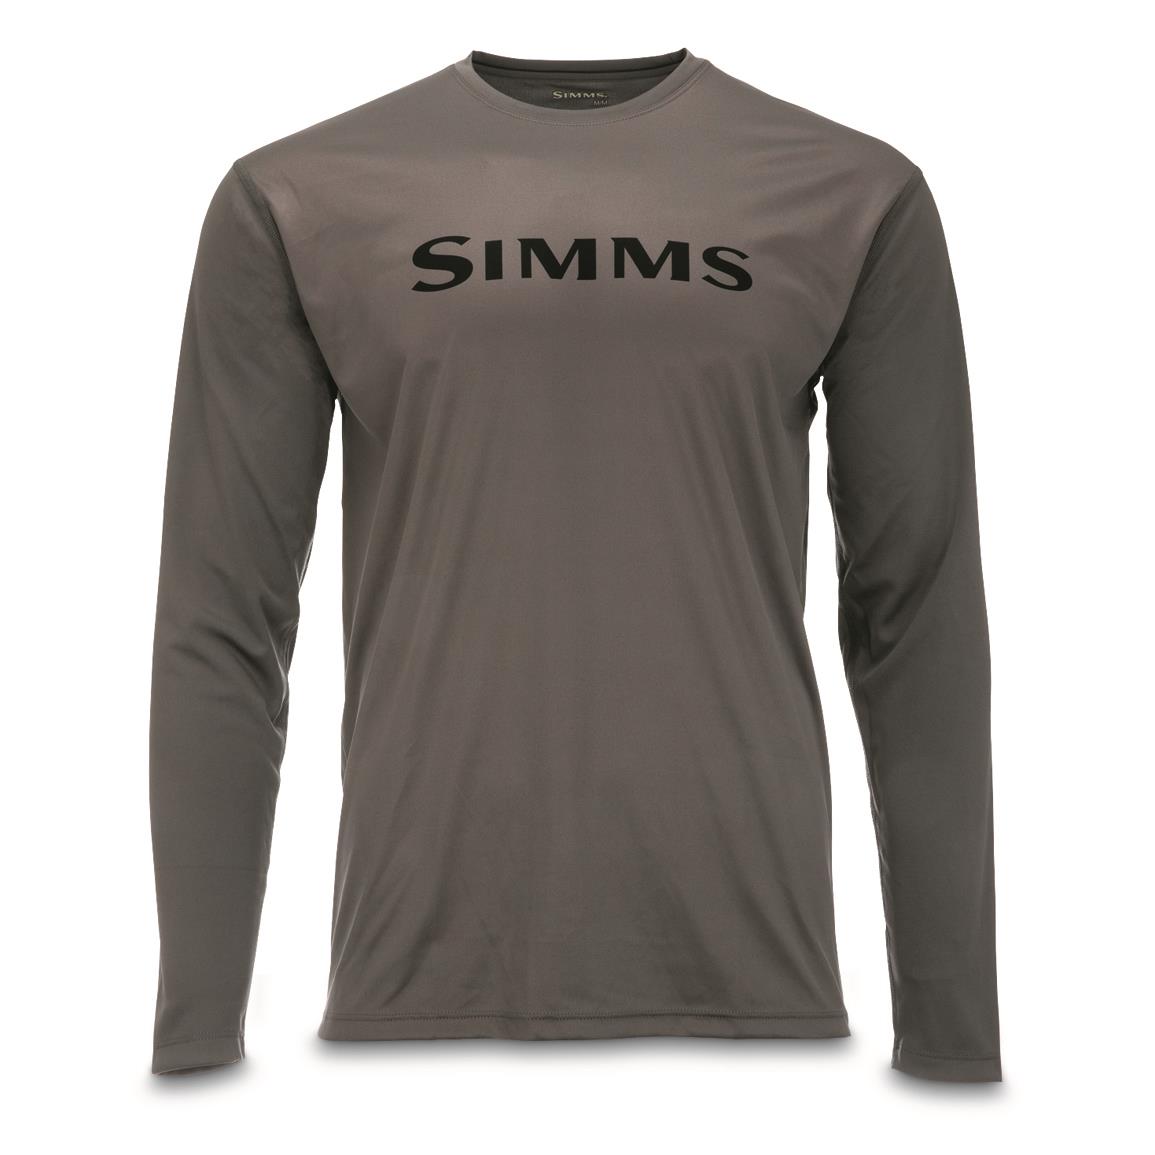 Simms Men's Tech Long-Sleeved Shirt, Steel